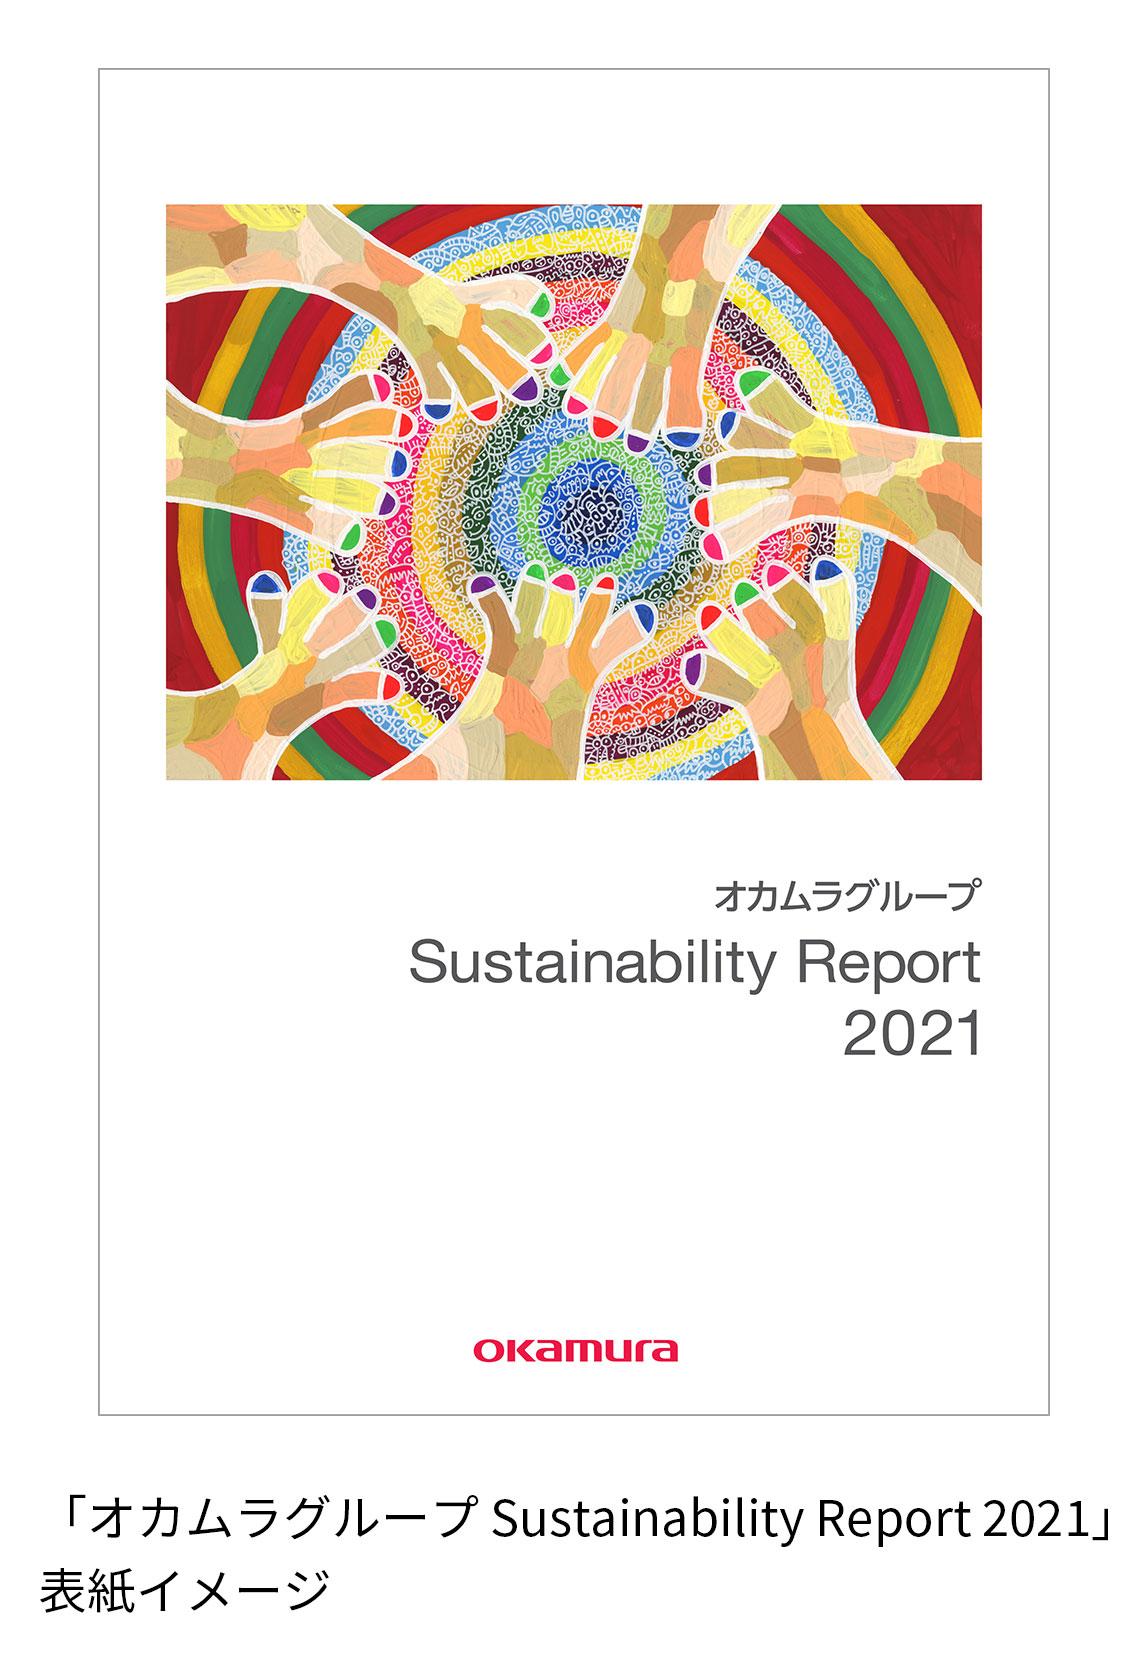 「オカムラグループSustainability Report 2021」表紙イメージ